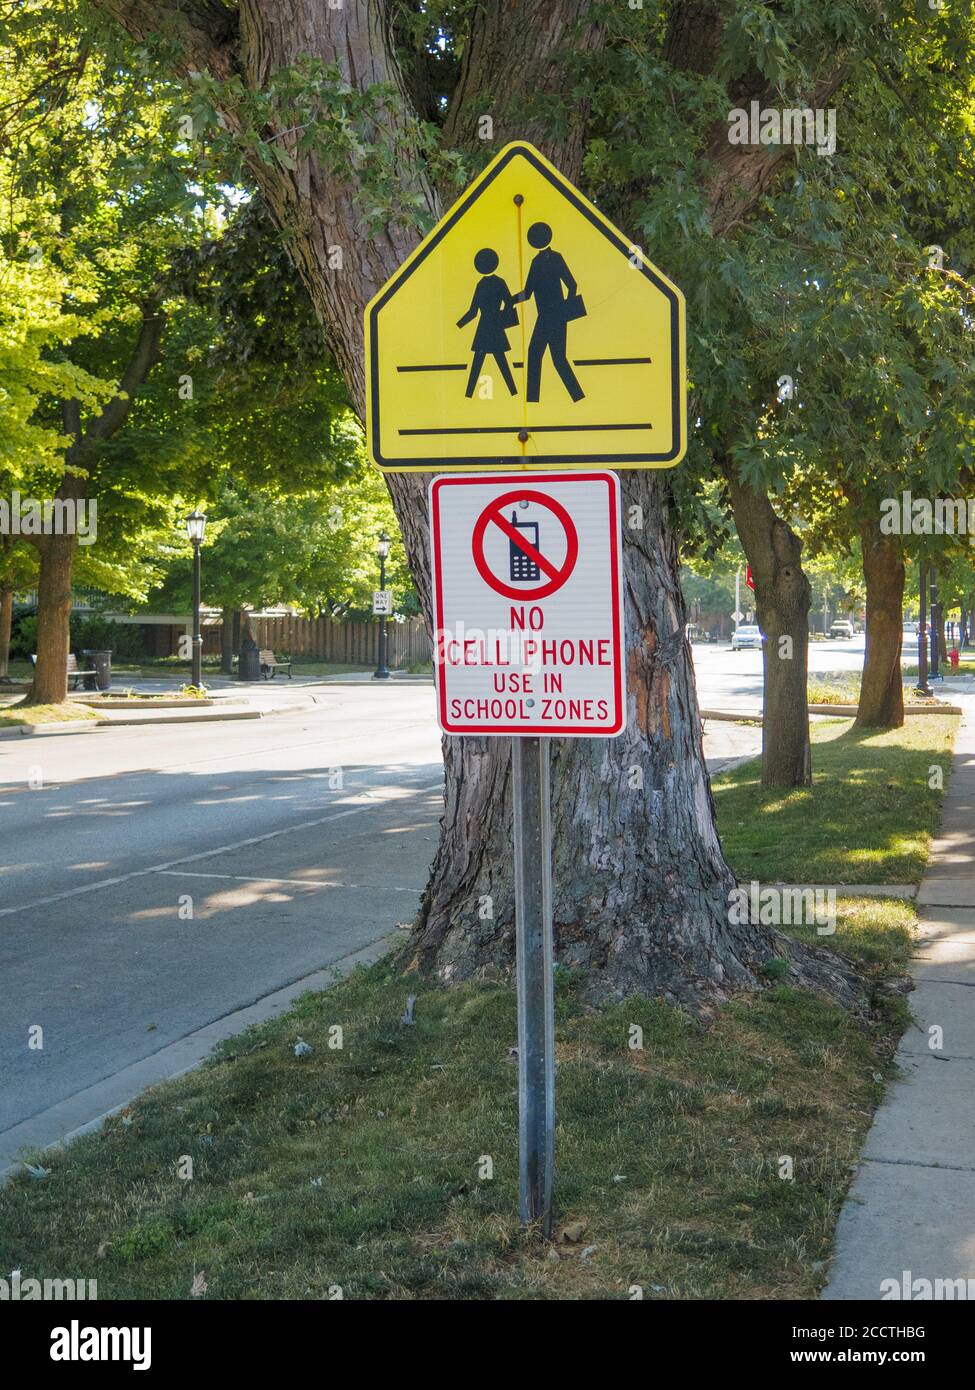 Traversée scolaire et pas d'utilisation de pone cellulaire dans les panneaux routiers de la zone scolaire. Forest Park, Illinois. Banque D'Images